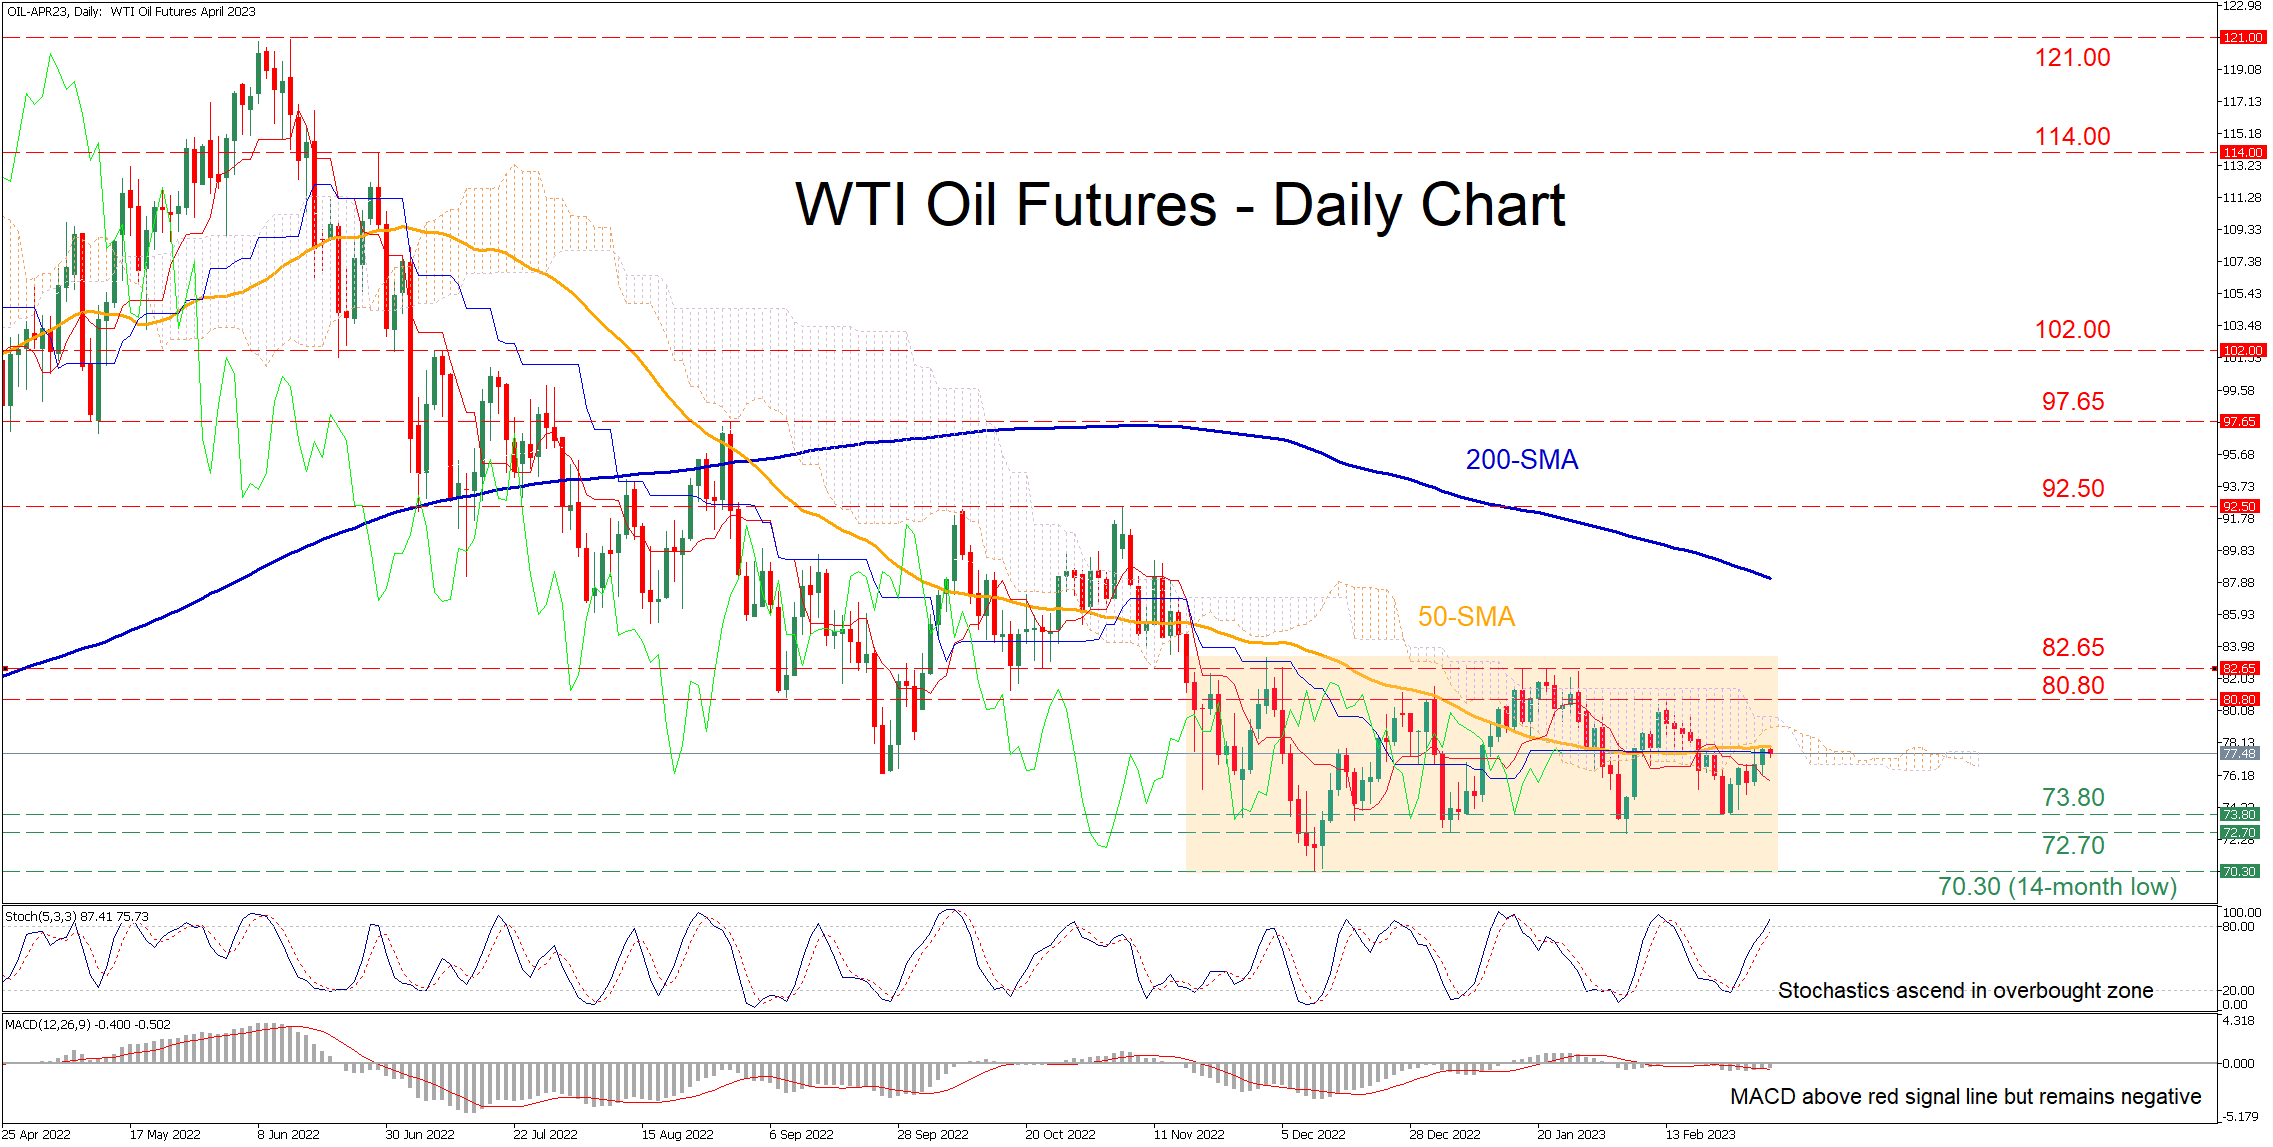 WTI oil futures extend sideways pattern